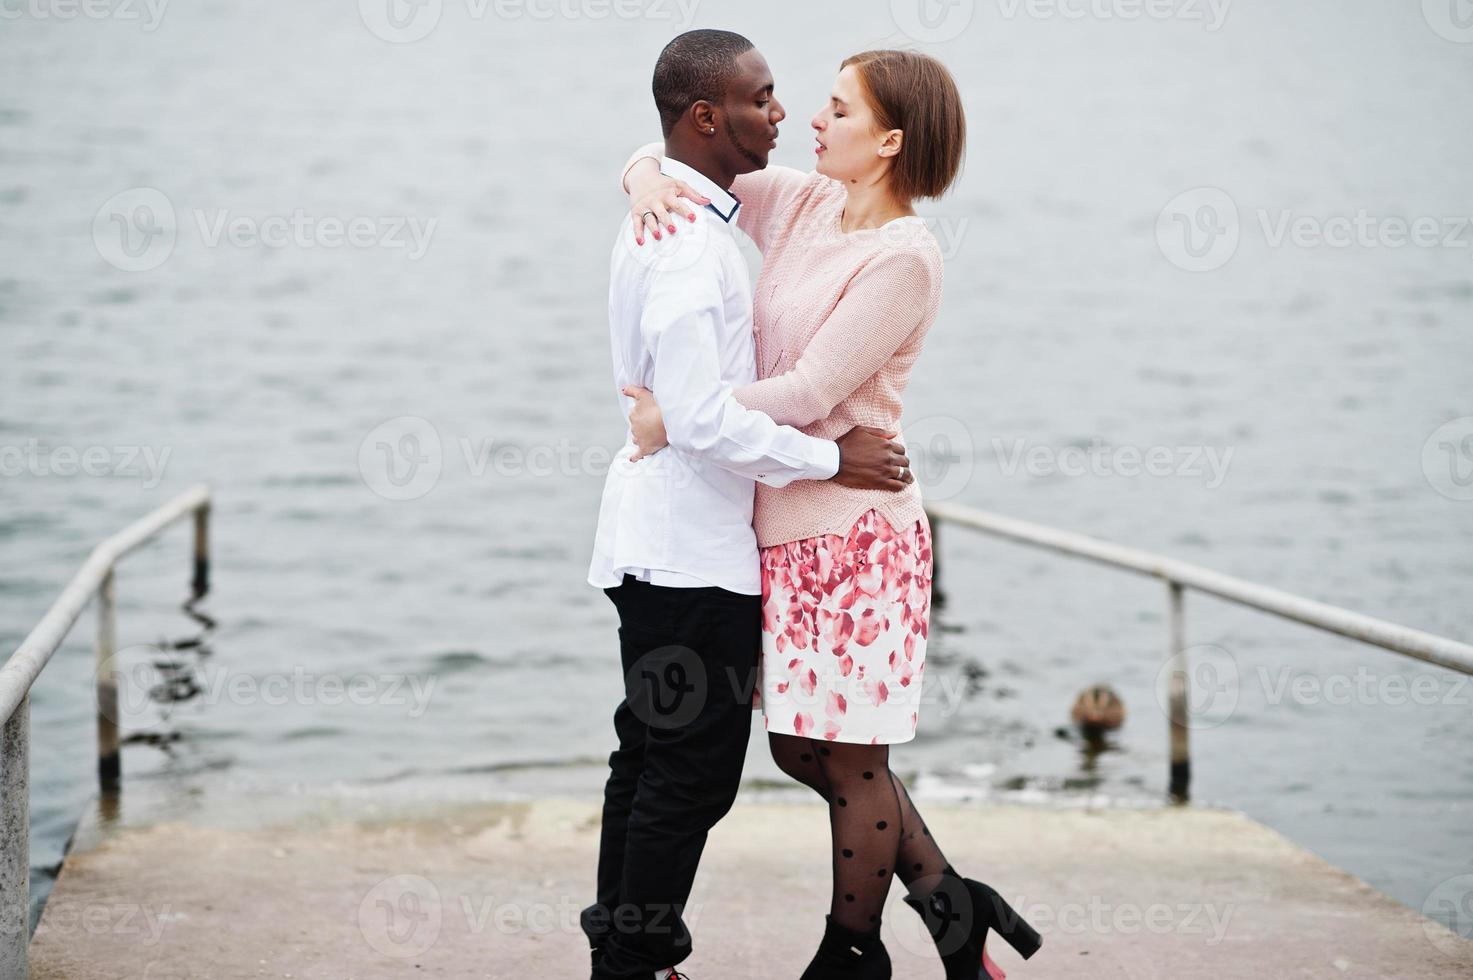 contento multietnico coppia nel amore storia. relazioni di africano uomo e bianca europeo donna. foto